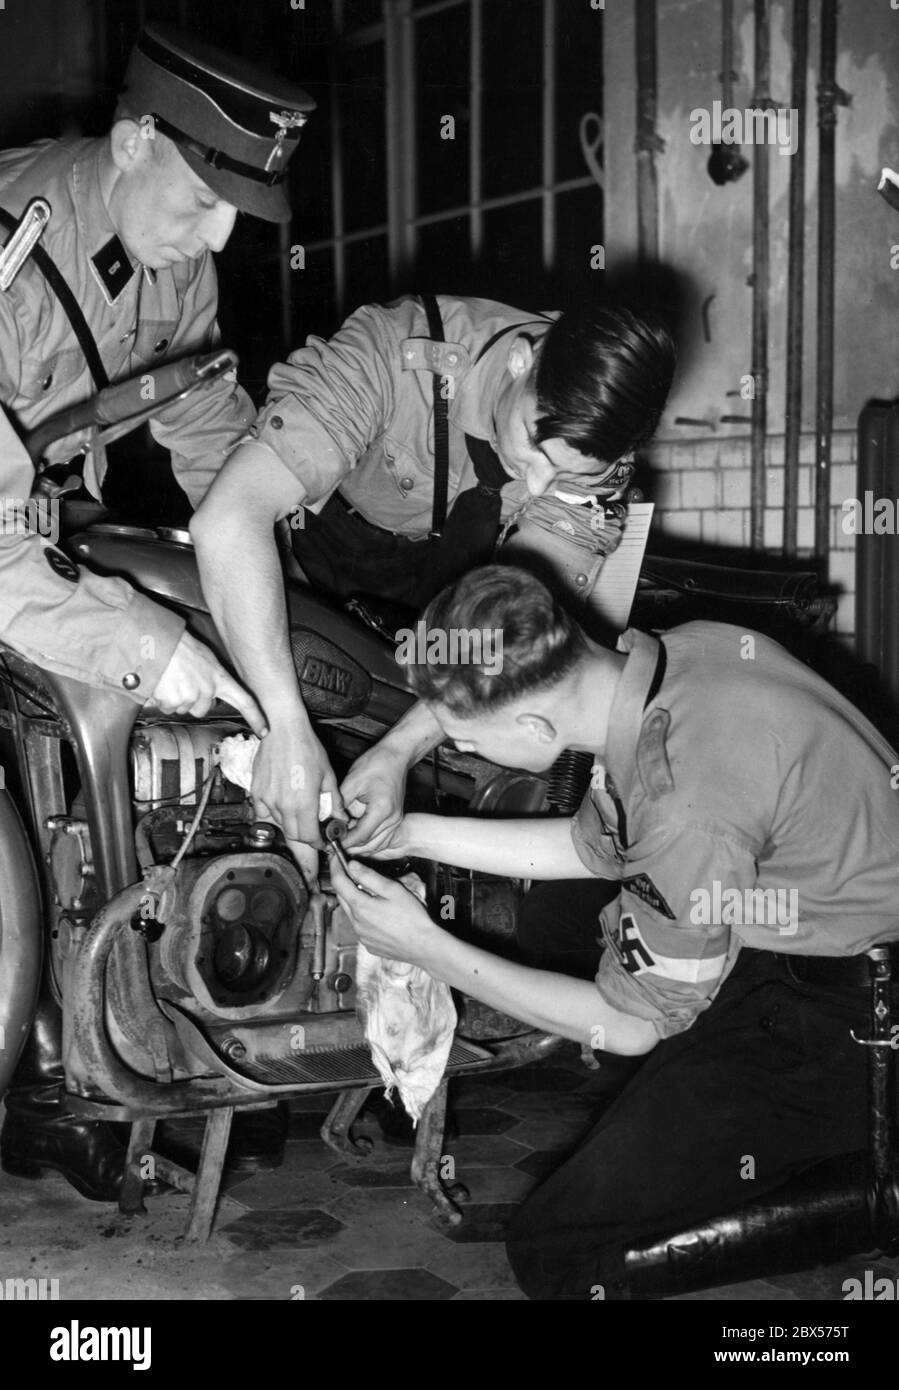 Mitglieder der Hitlerjugend während einer Lektion über den Bau eines Motors. Die Jugendlichen zerlegen den Motor einer BMW-Maschine. Das Motorrad ist wahrscheinlich ein BMW R12. Ein NSKK-Mitglied hilft ihnen. Stockfoto